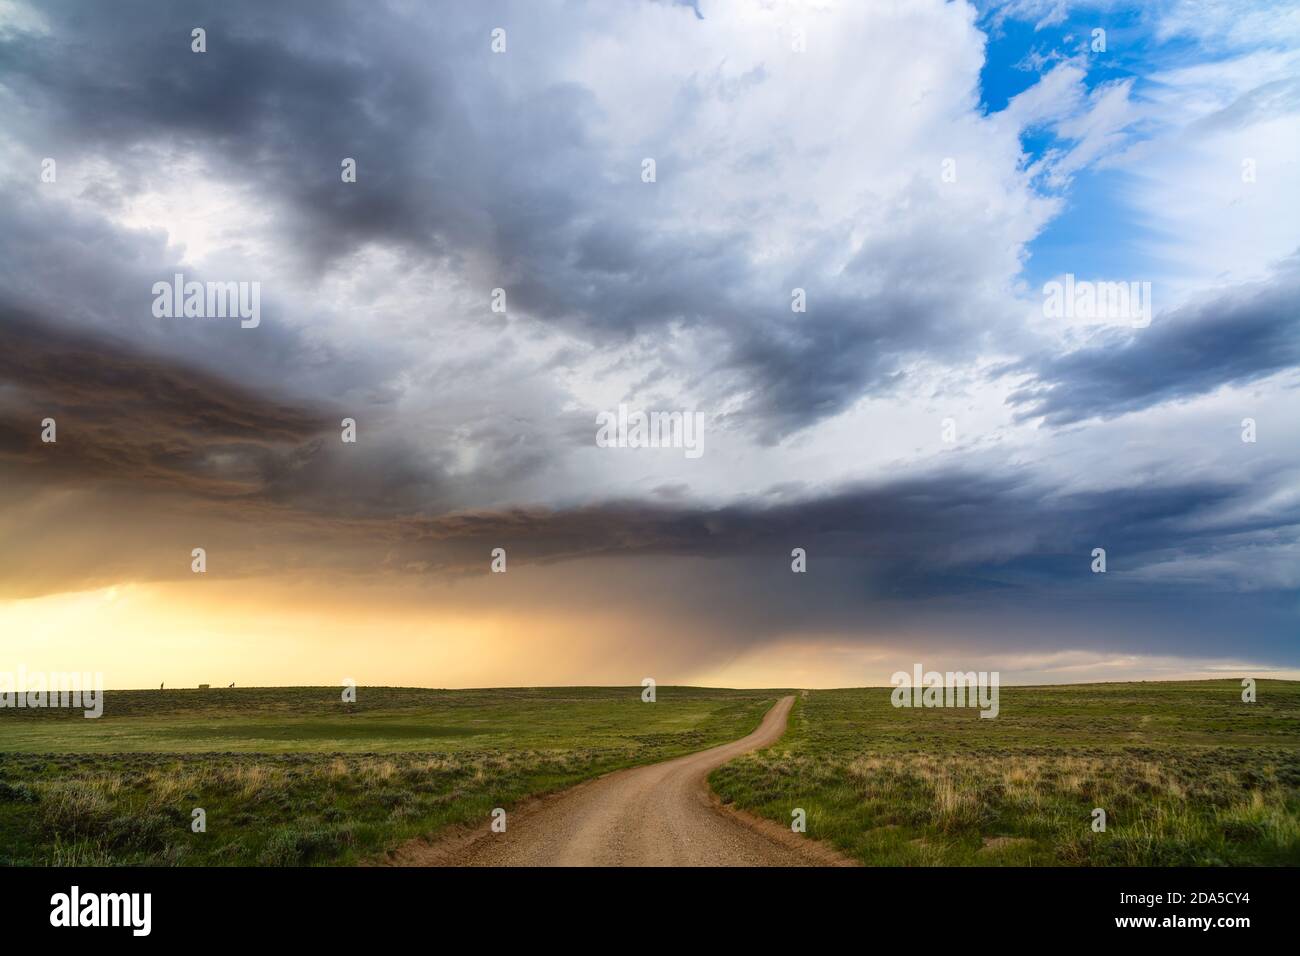 Camino de tierra a través de colinas onduladas con nubes de tormenta en el Thunder Basin National Grassland, Wyoming, Estados Unidos Foto de stock